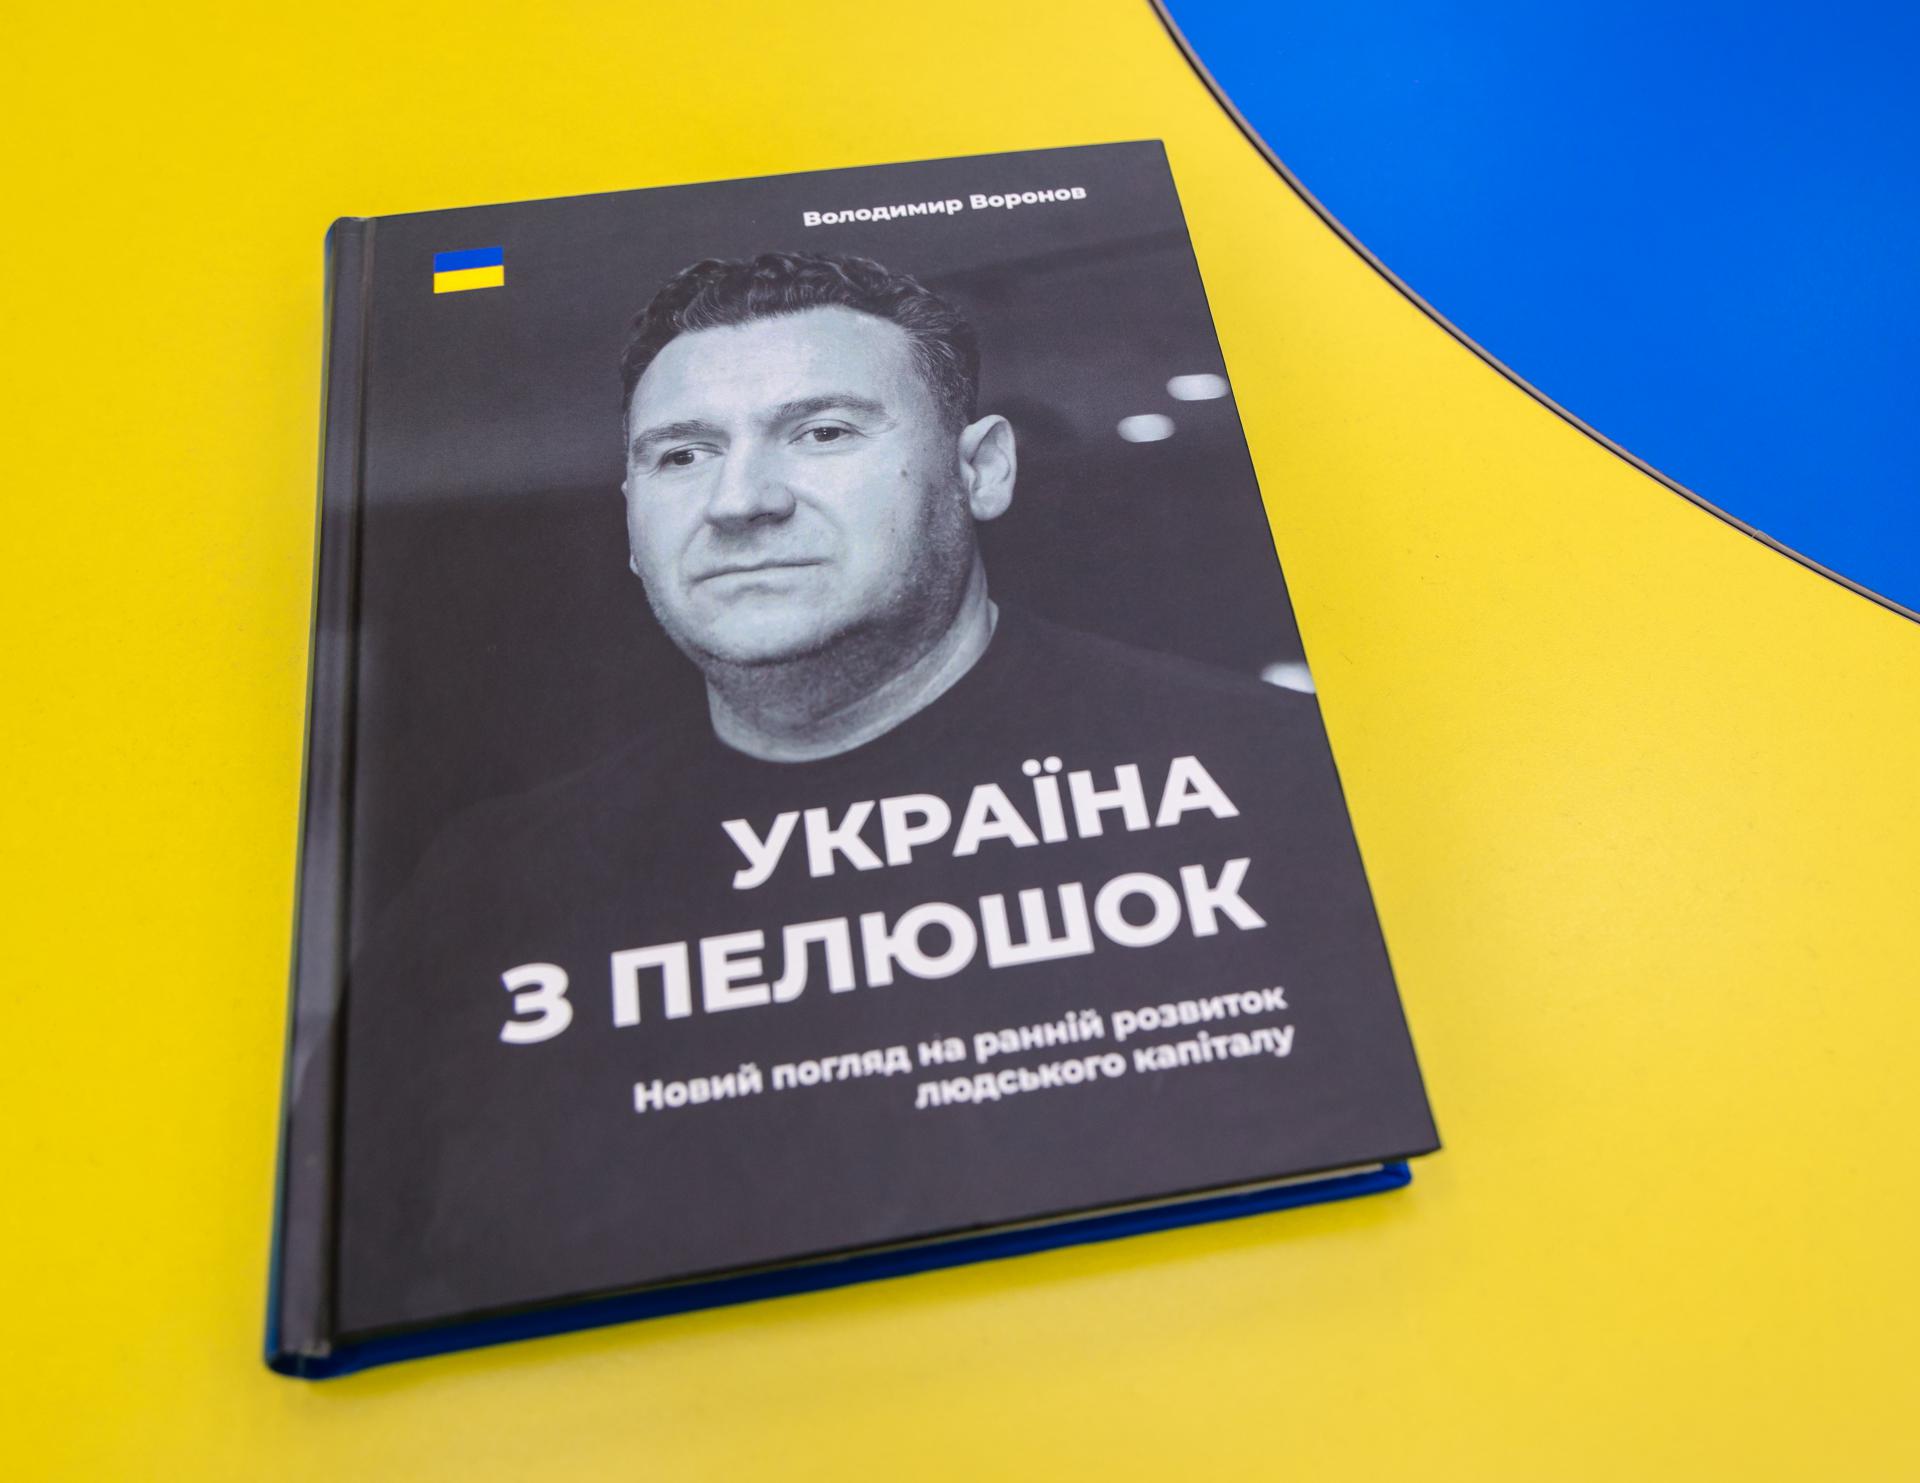 «Україна з пелюшок»: засновник бренду Mr. Leader презентував університету книгу, присвячену методикам раннього розвитку